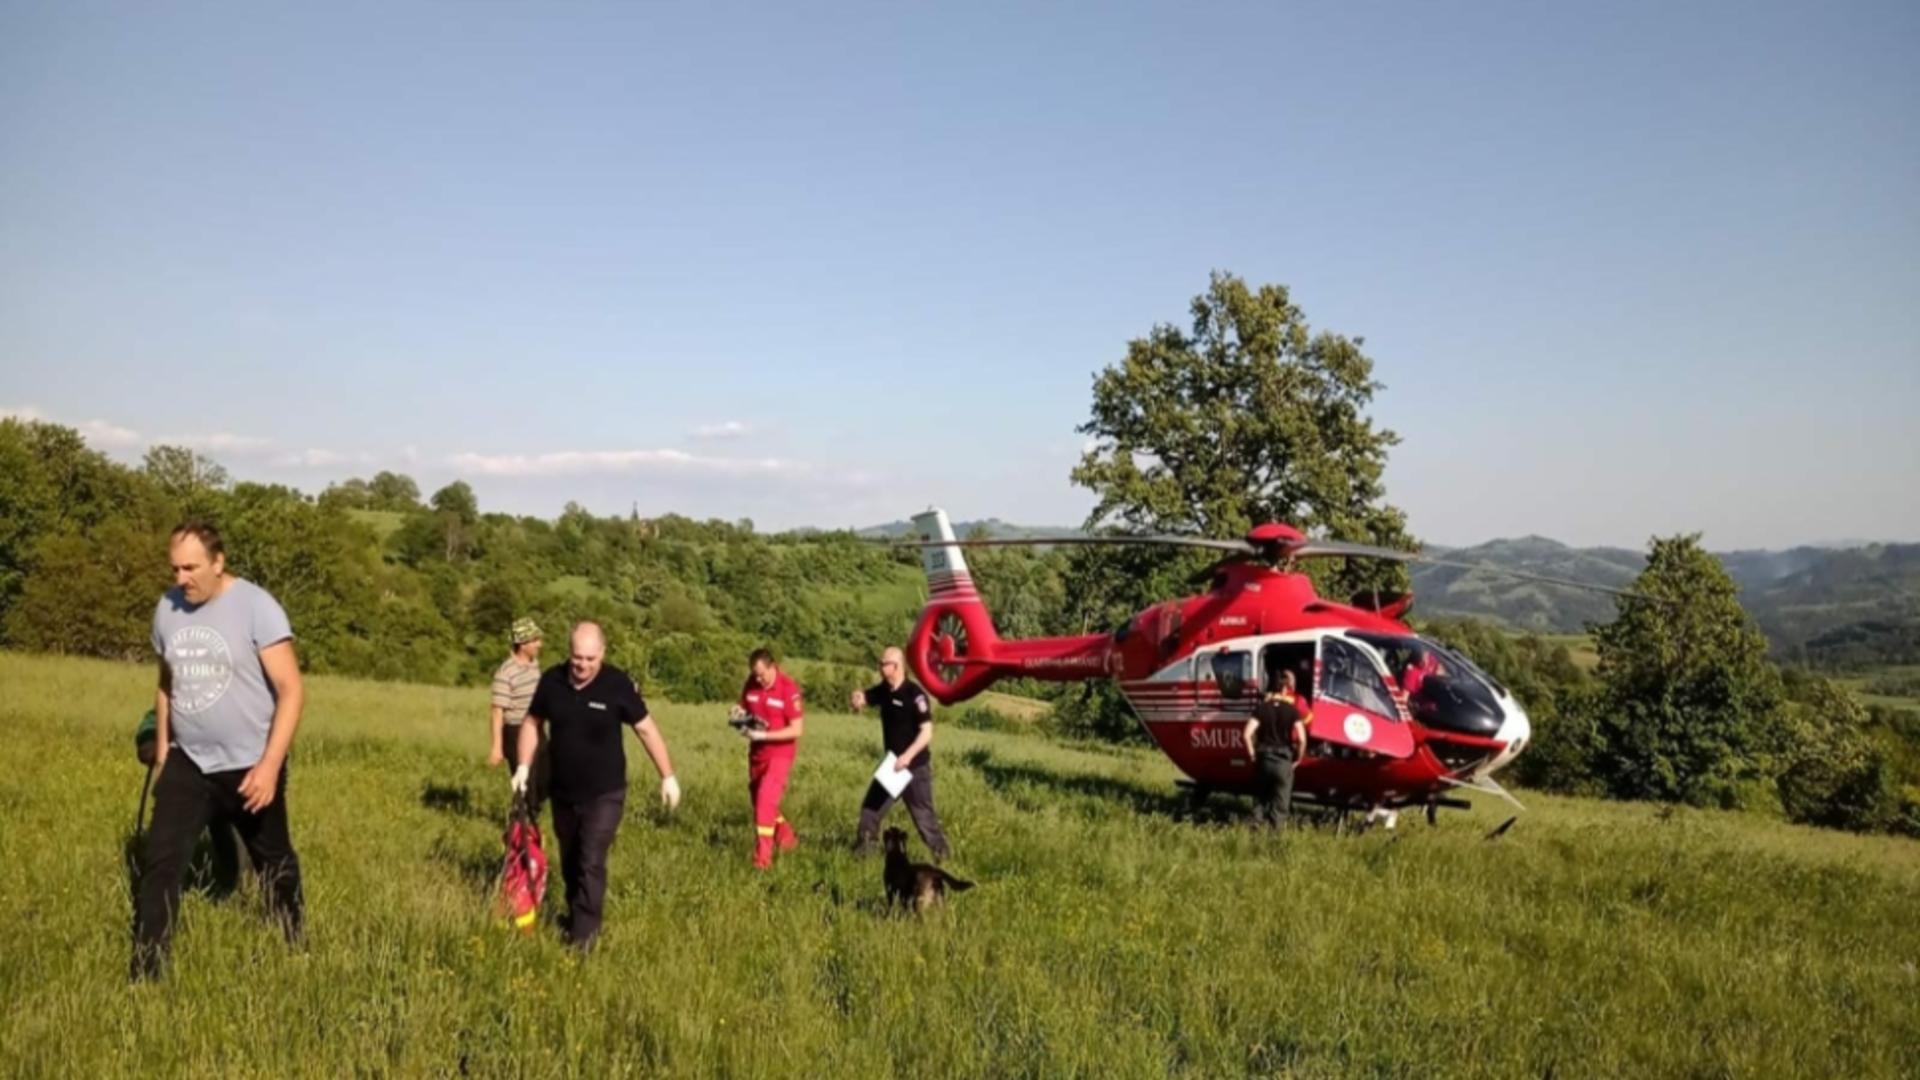 Un bărbat din Caraș Severin a căzut dintr-un copac, de la o înălțime de aproximativ 5 metri: a intervenit elicopterul SMURD